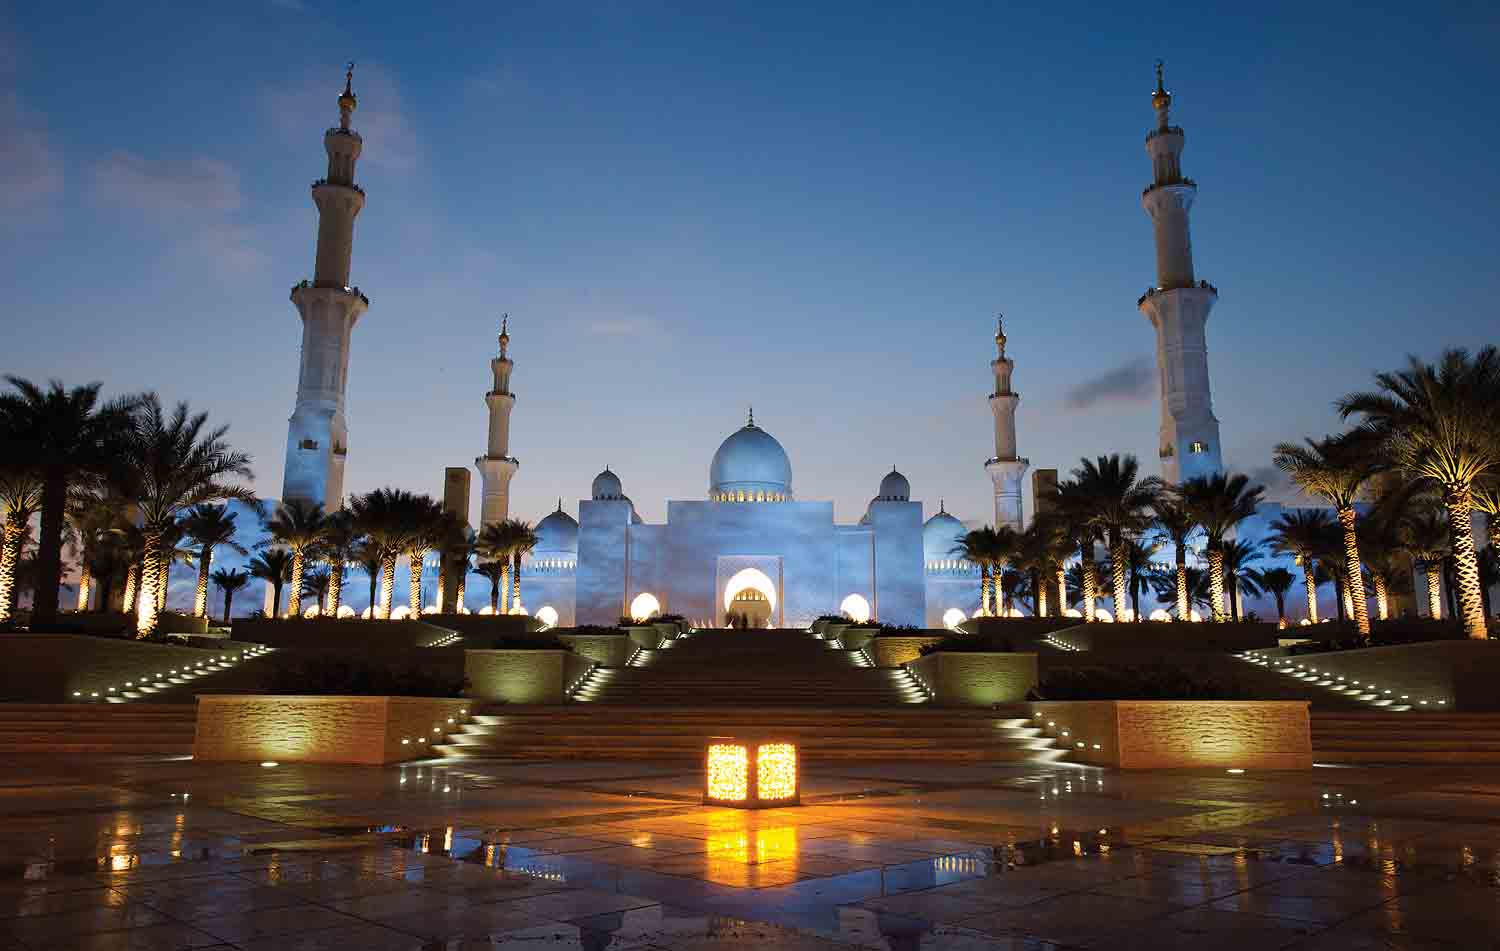 جامع الشيخ زايد الكبير الأول إقليميا والرابع عالميا ضمن فئة "أبرز 25 منطقة جذب للسياح"